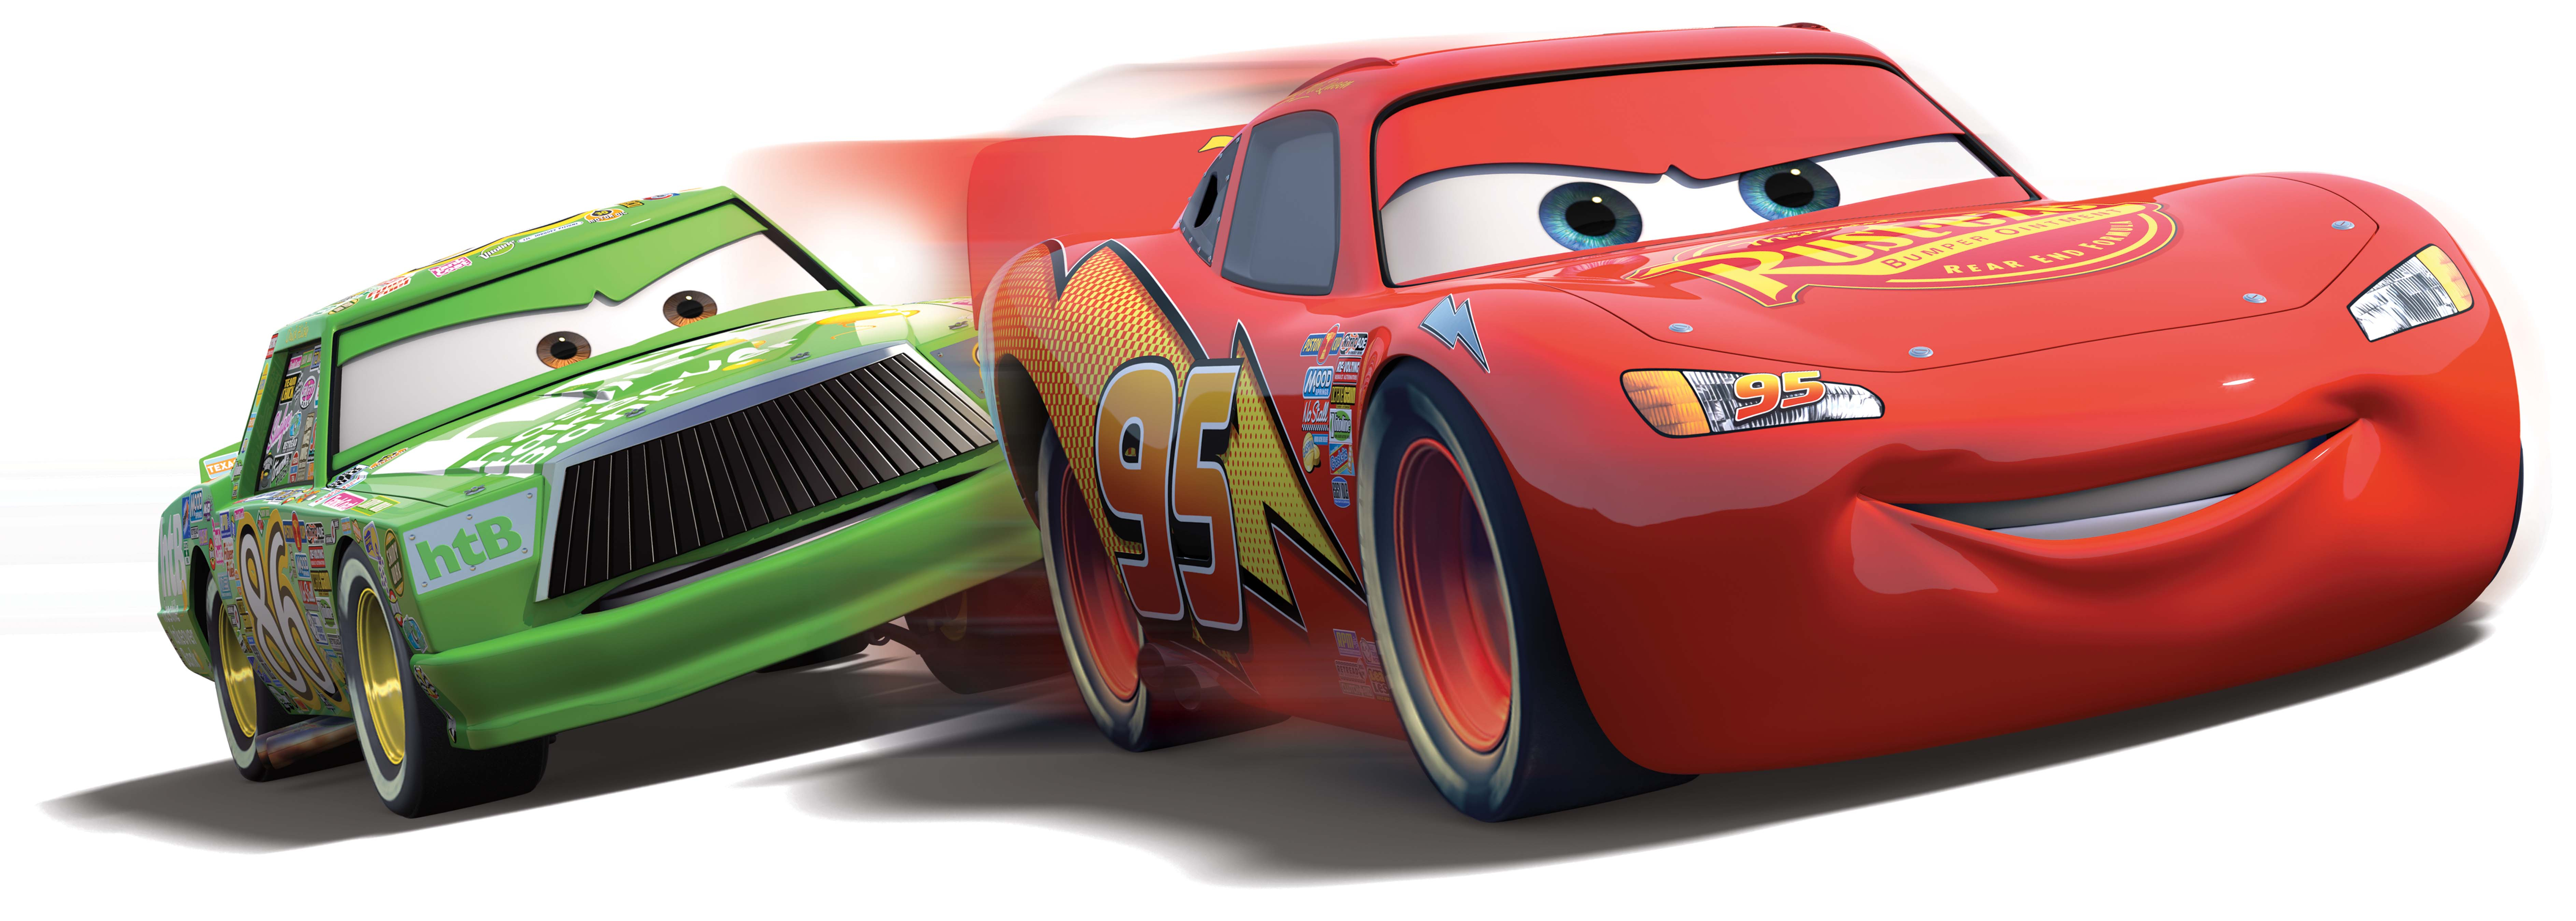 Pixar Presents Cars - Disney Cars 1 Logo - HD Wallpaper 